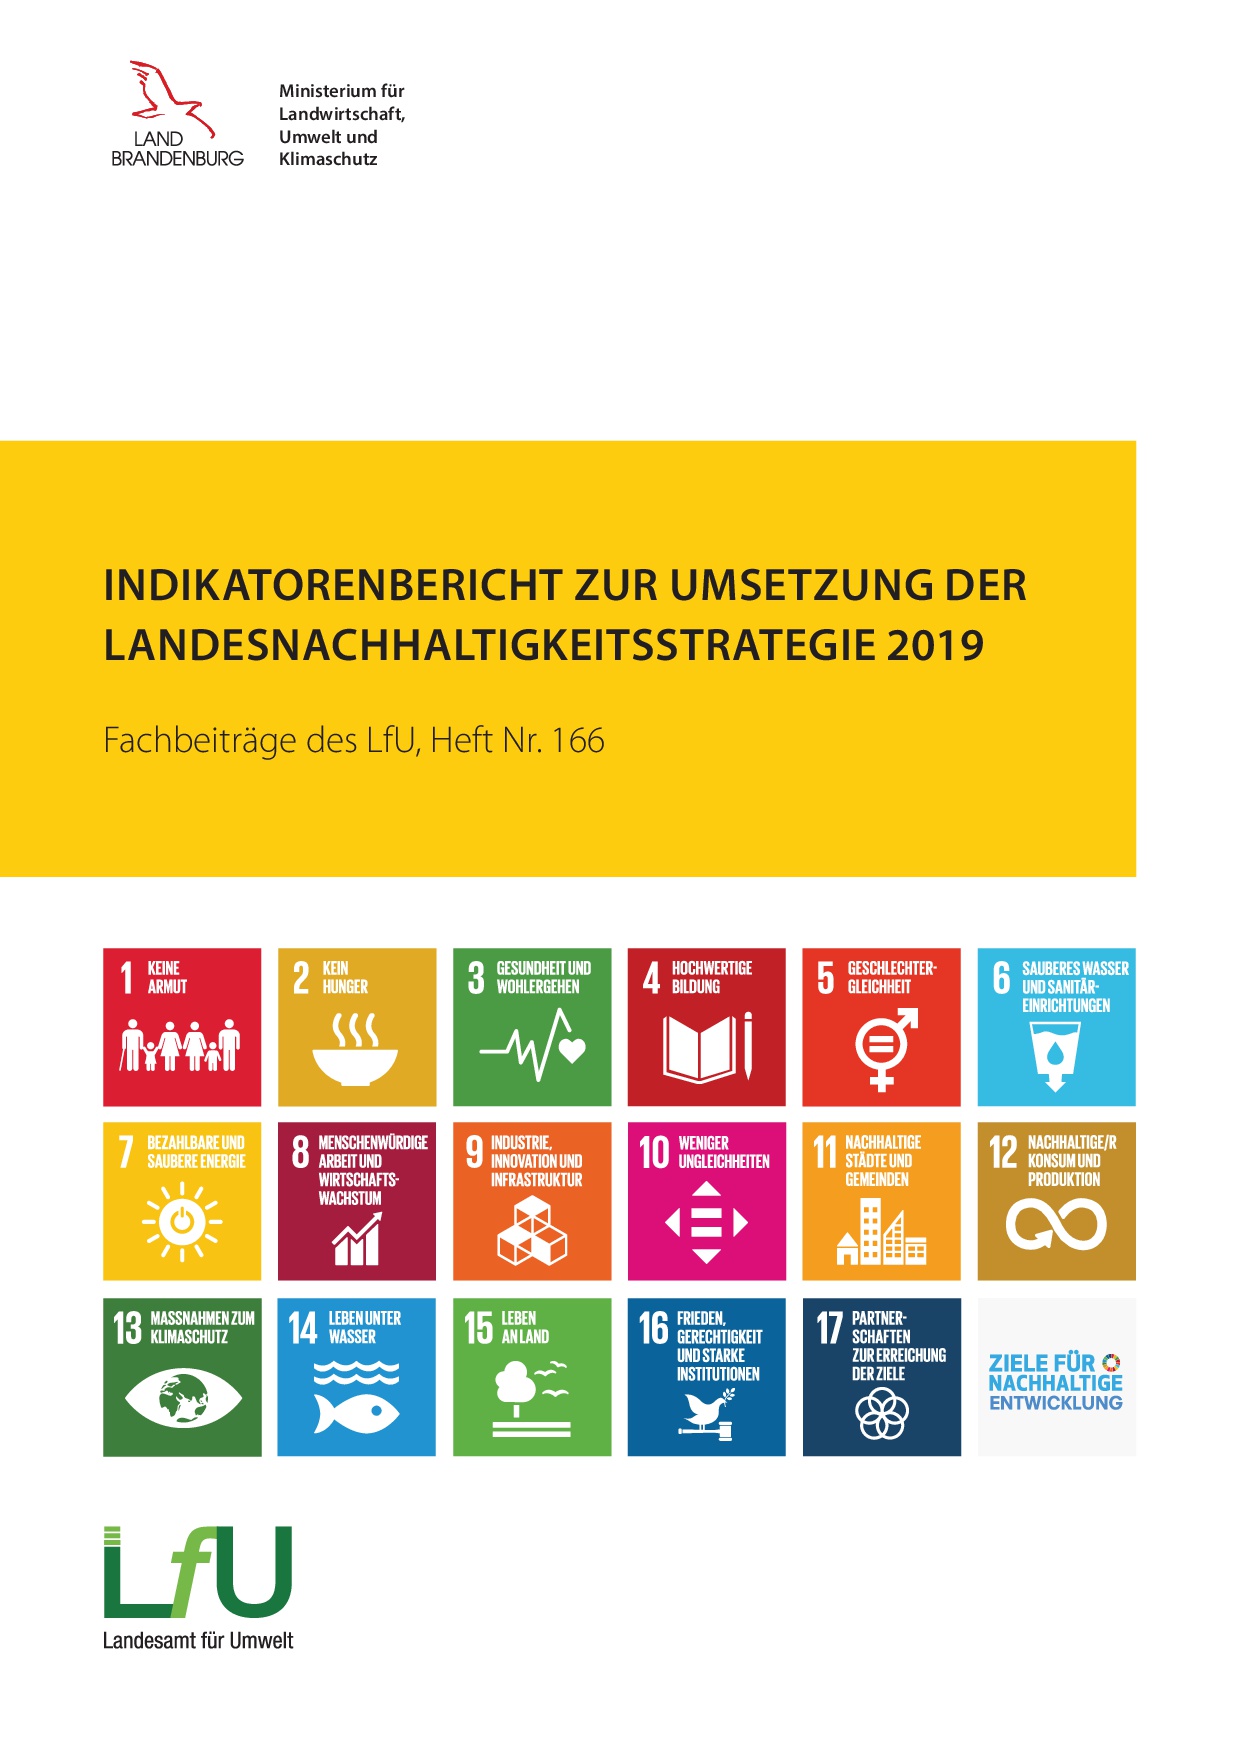 Bild vergrößern (Bild: Indikatorenbericht zur Umsetzung der Landesnachhaltigkeitsstrategie 2019 - Fachbeiträge, Heft 166)